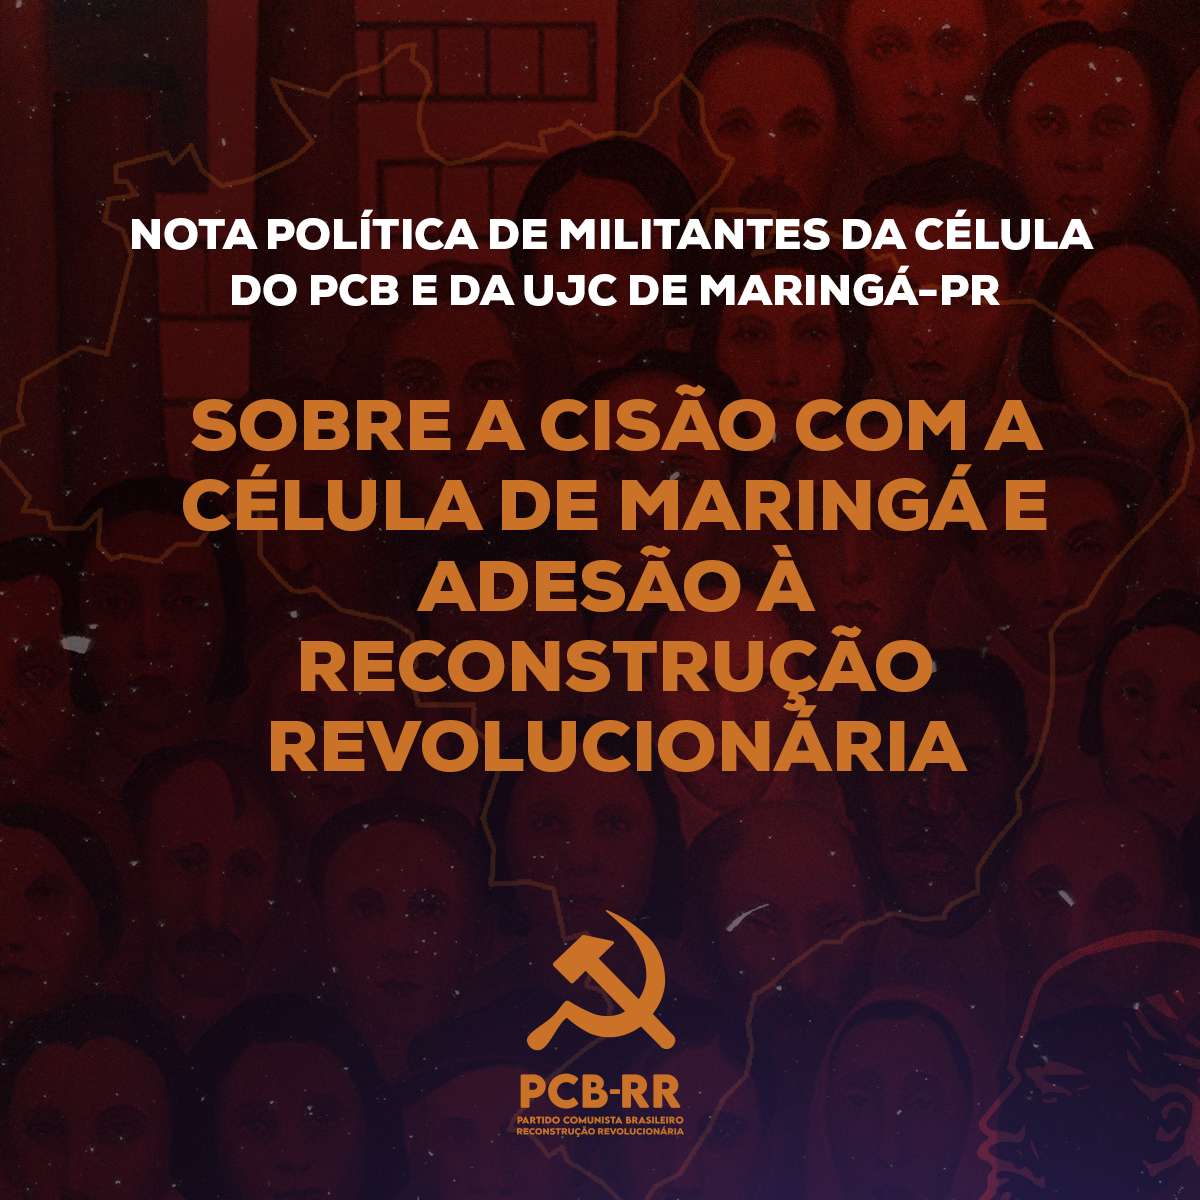 Maringá: Nota política sobre a cisão com a célula do partido e adesão à Reconstrução Revolucionária